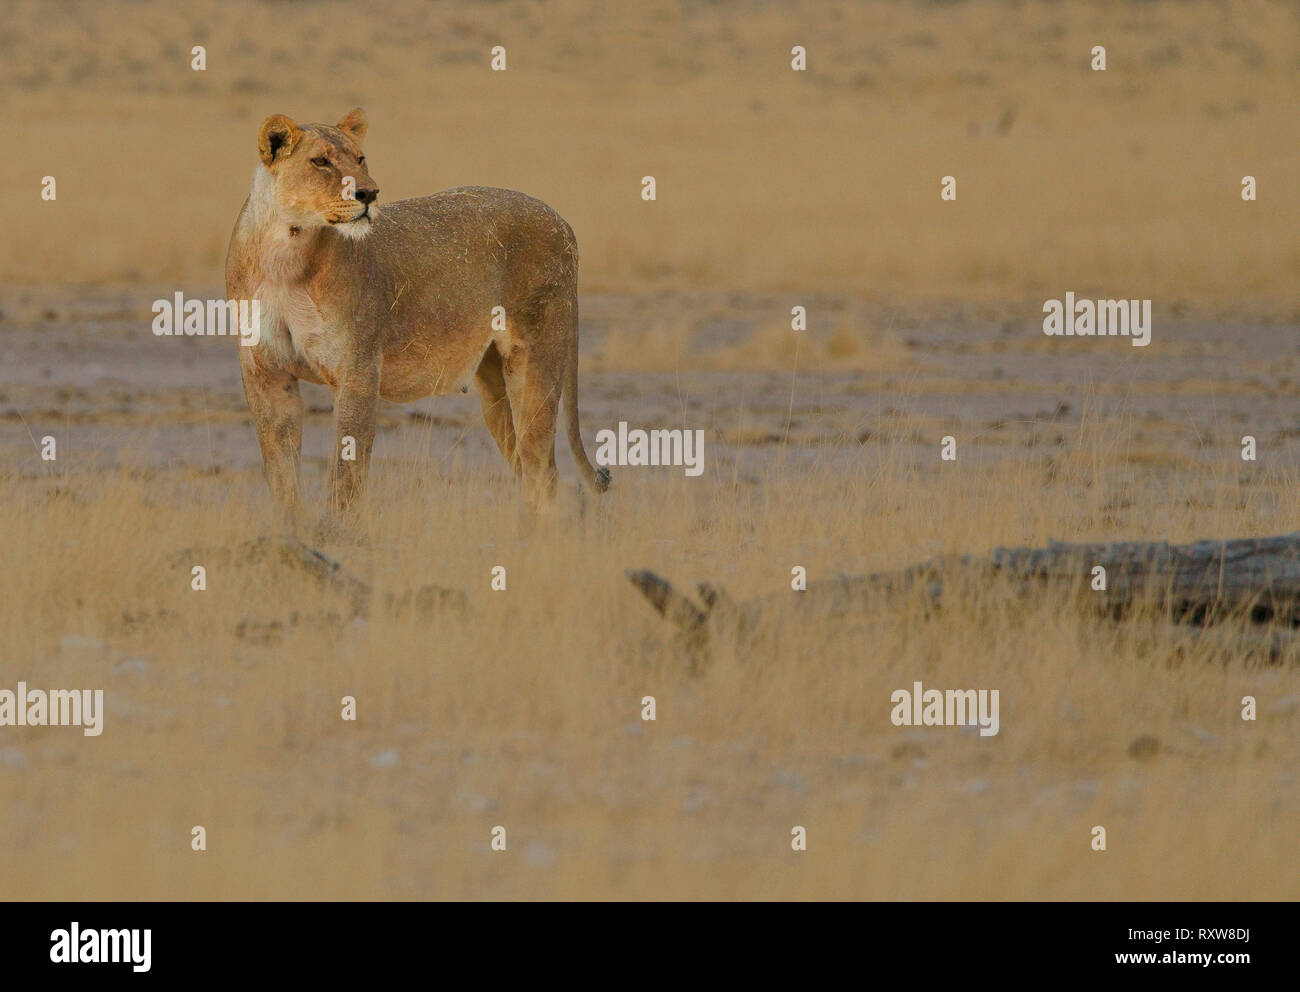 Lioness (Panthera leo) est le principal prédateur de la famille des Félidés. Etosha National Park, Namibie, Afrique. Banque D'Images